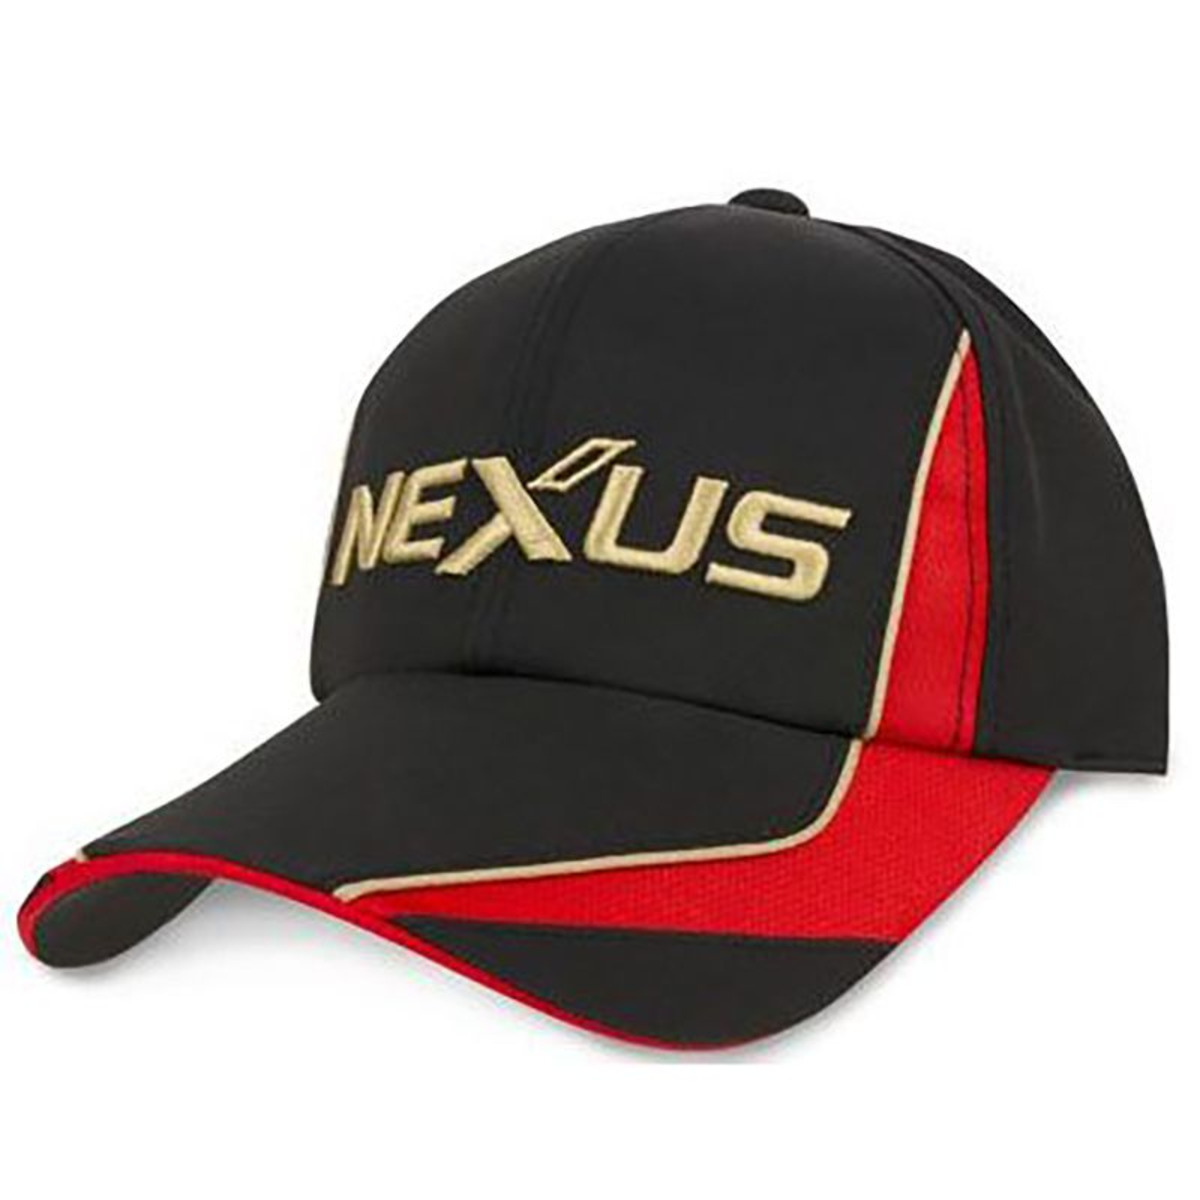 Shimano Nexus Basic Cap - Black